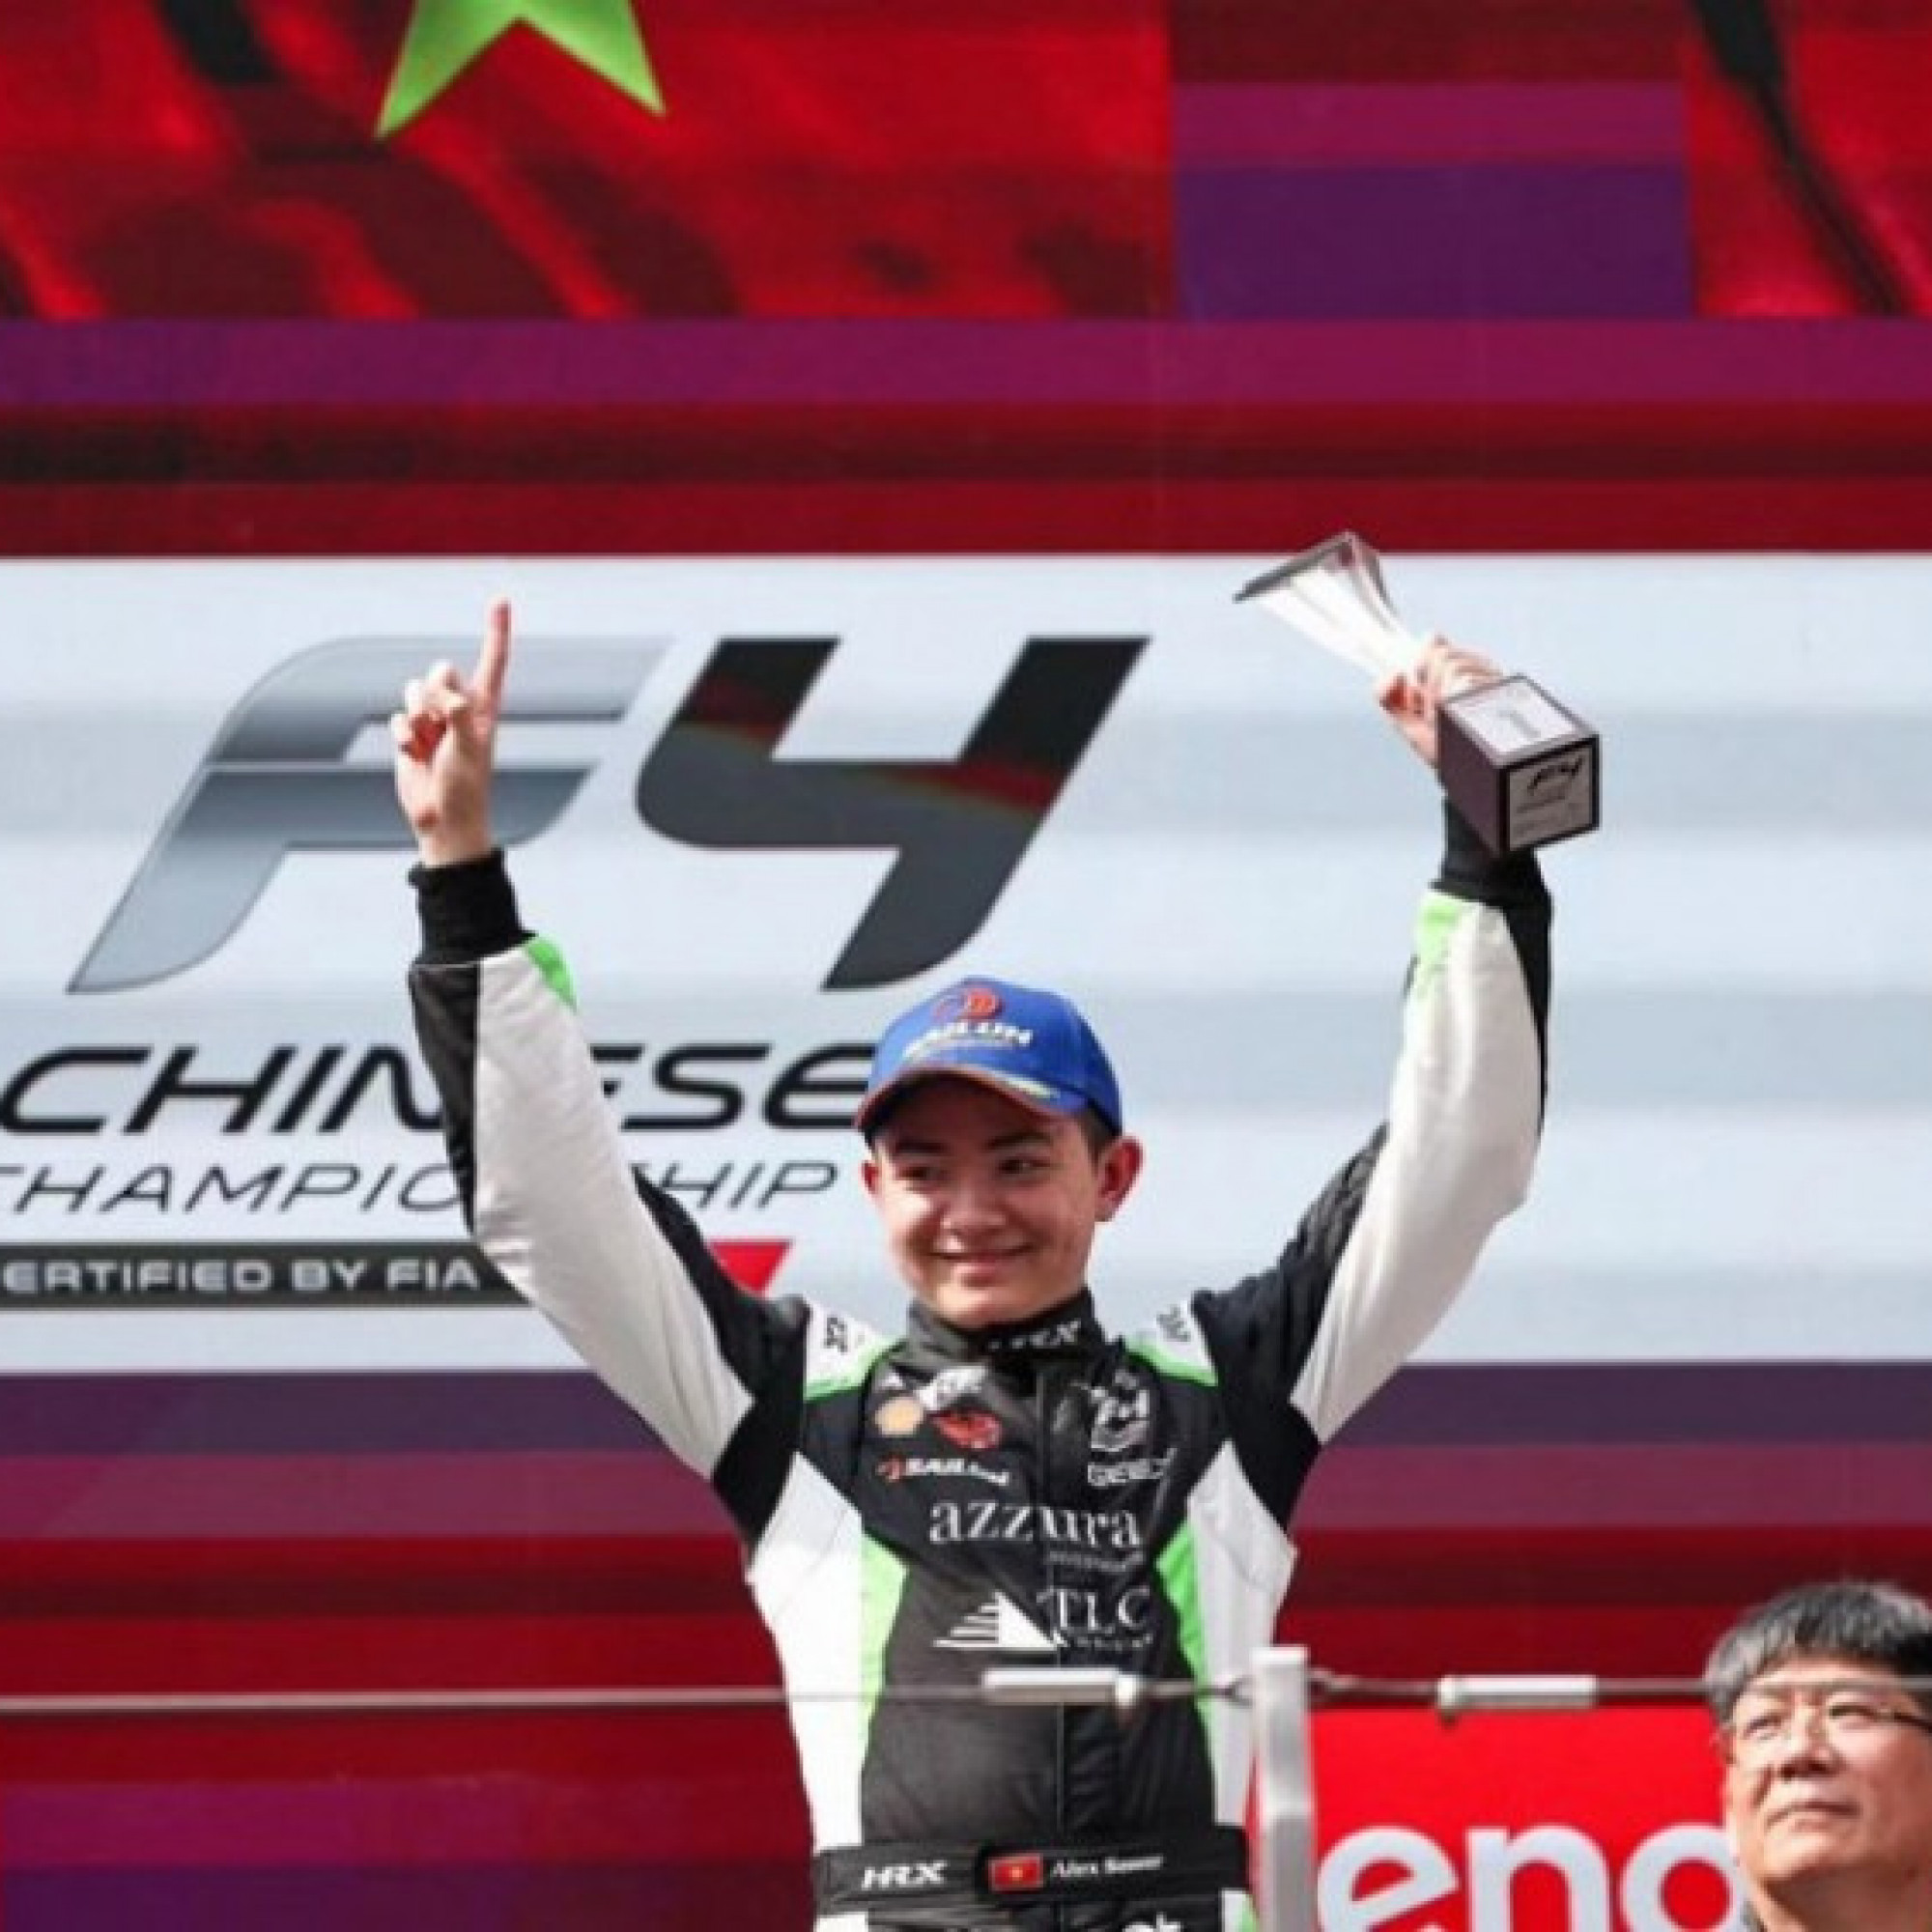  - Nóng nhất thể thao tối 24/4: Tay đua 16 tuổi người Việt Nam lần đầu dự giải đua xe F3 thế giới